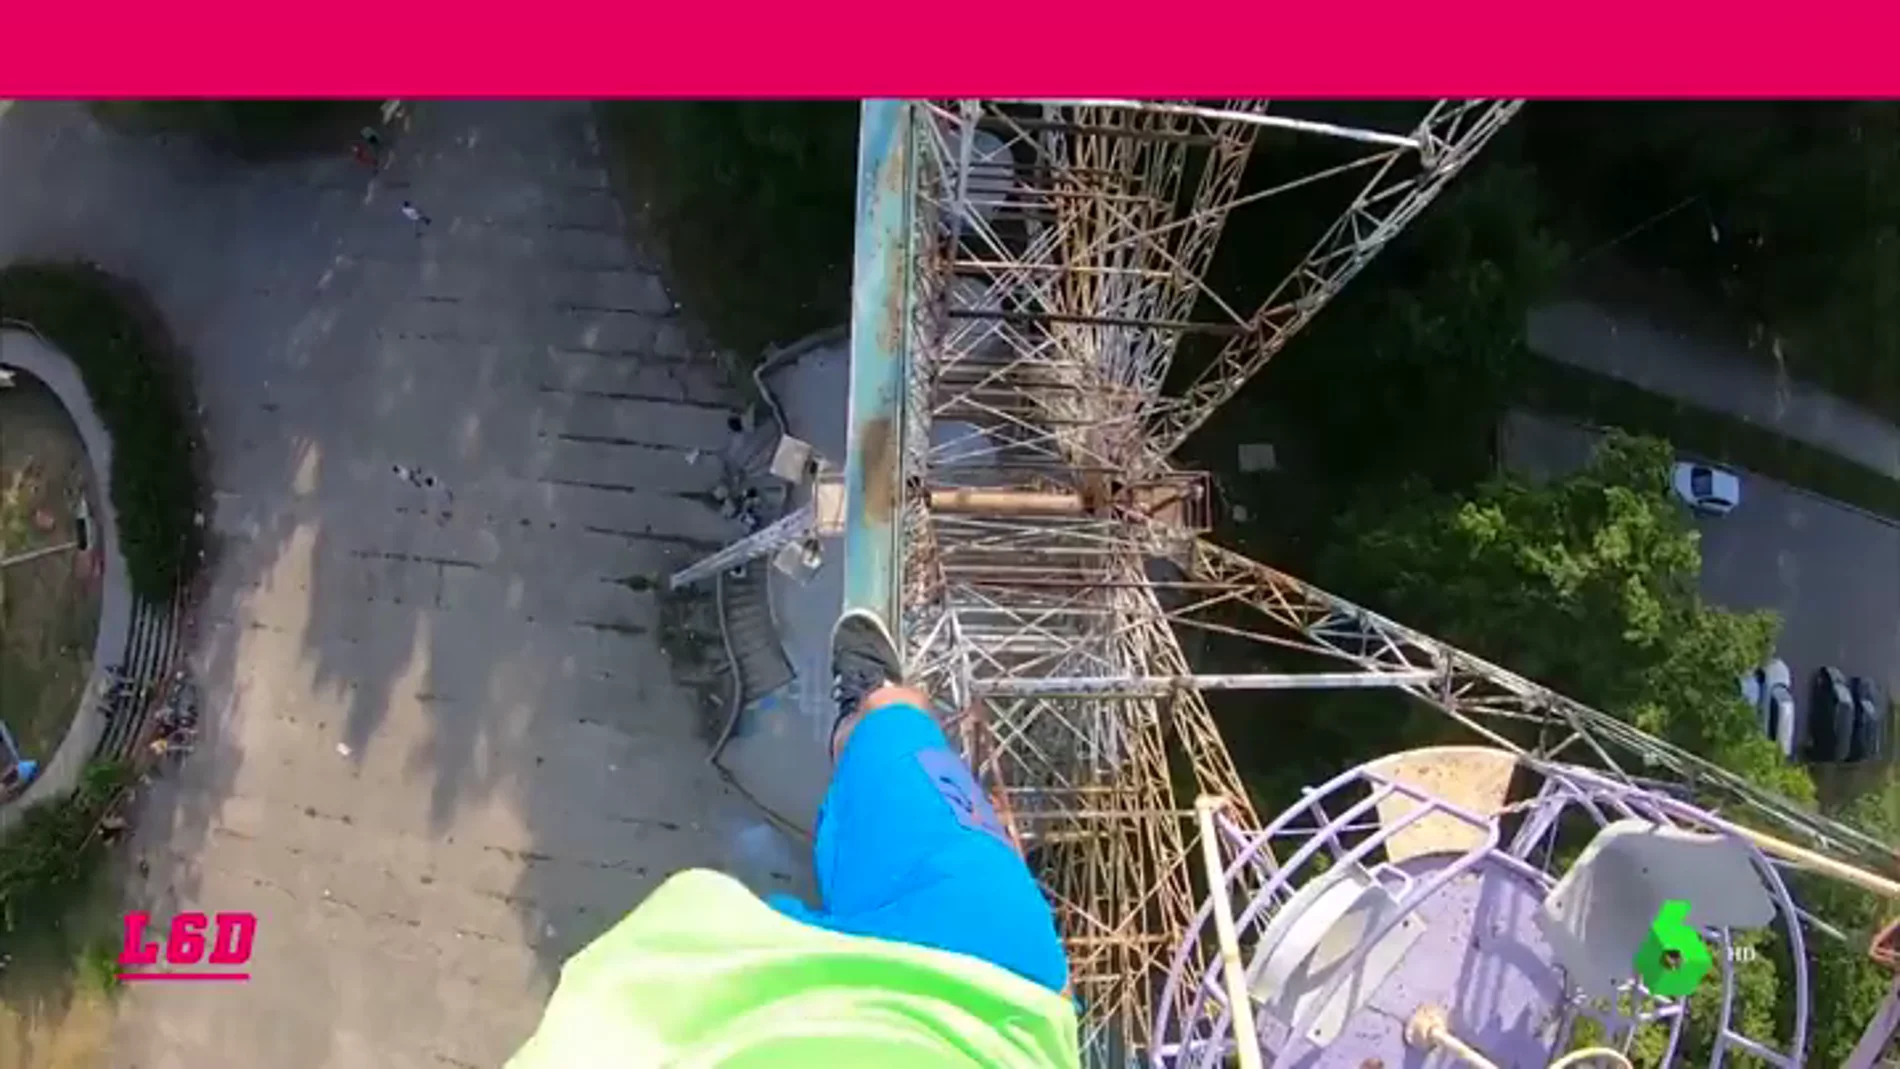 El último reto del Spider-Man de Silesia: trepa una noria sin cuerda y sin sujeciones